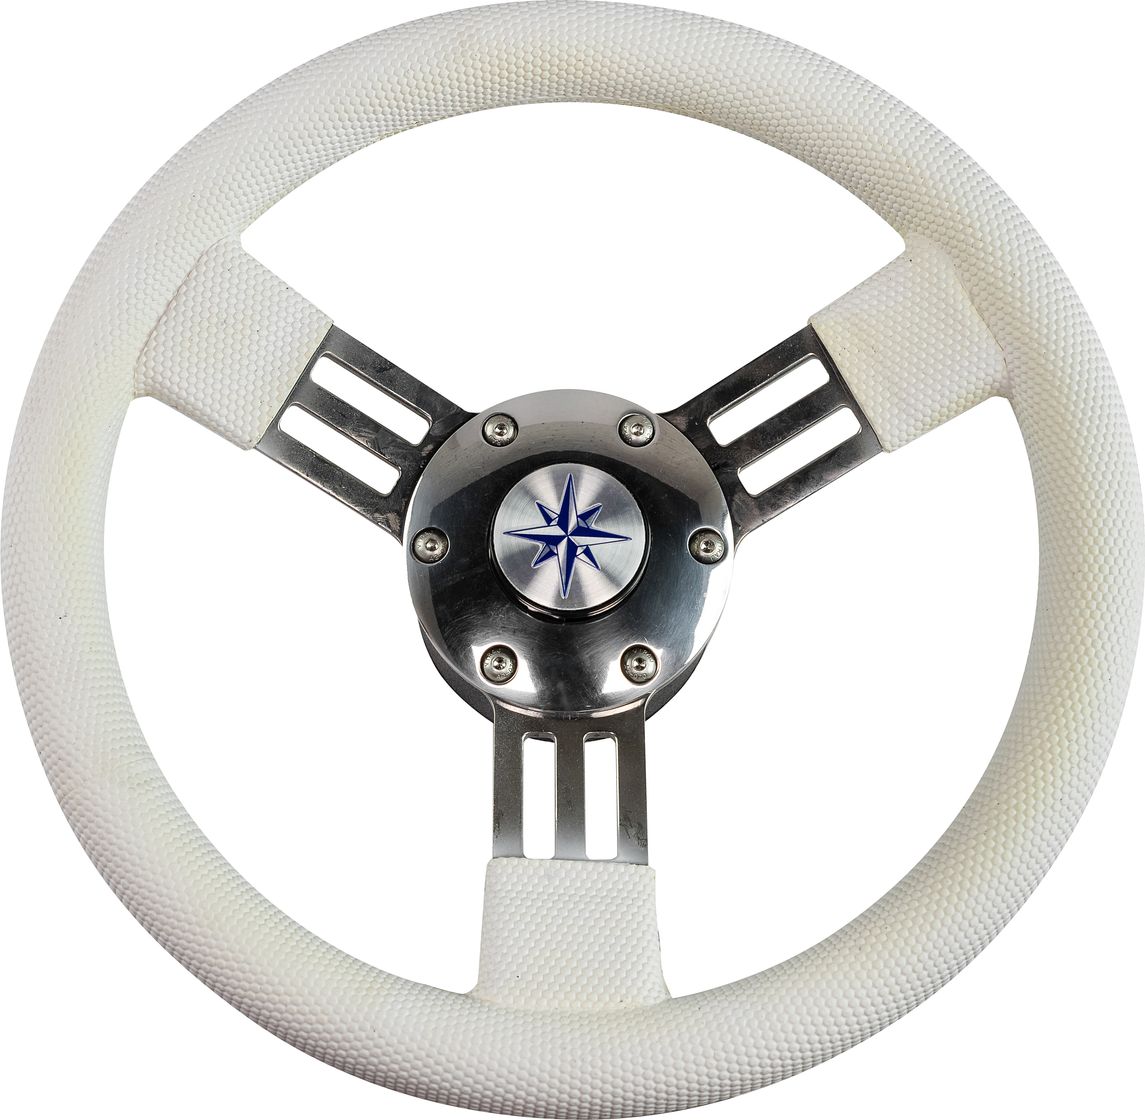 Рулевое колесо PEGASO обод белый, спицы серебряные д. 300 мм VN13327-08 рулевое колесо leader tanegum белый обод серебряные спицы д 360 мм vn7360 08